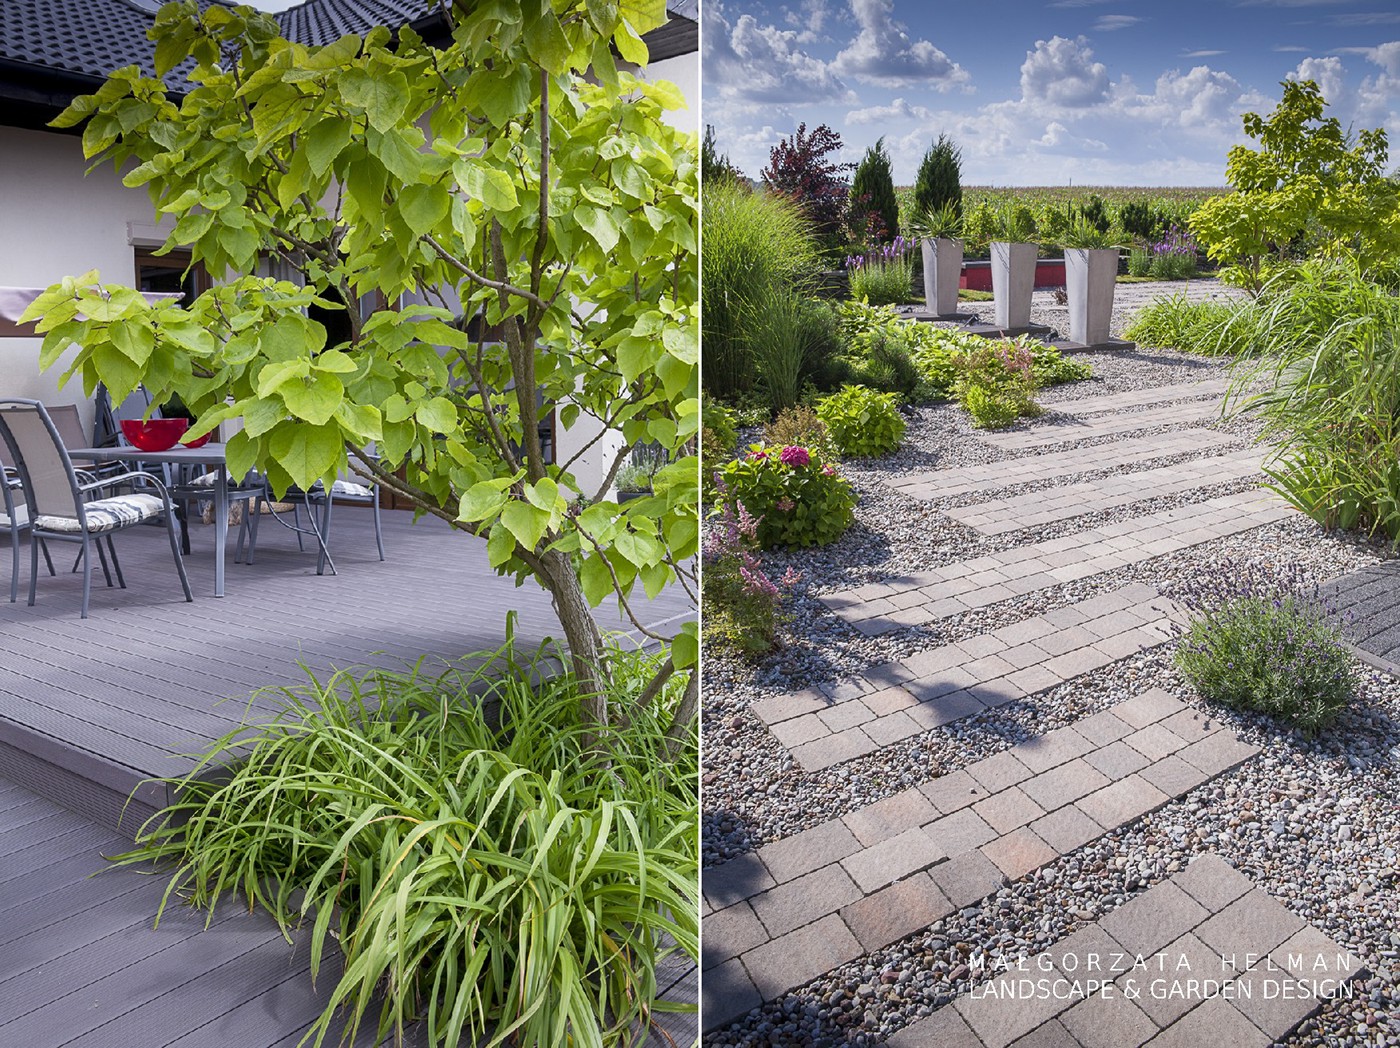 ogrod zwirowy nowoczesny ogród projekt ogrodu Czerwony red gravel terrace garden design